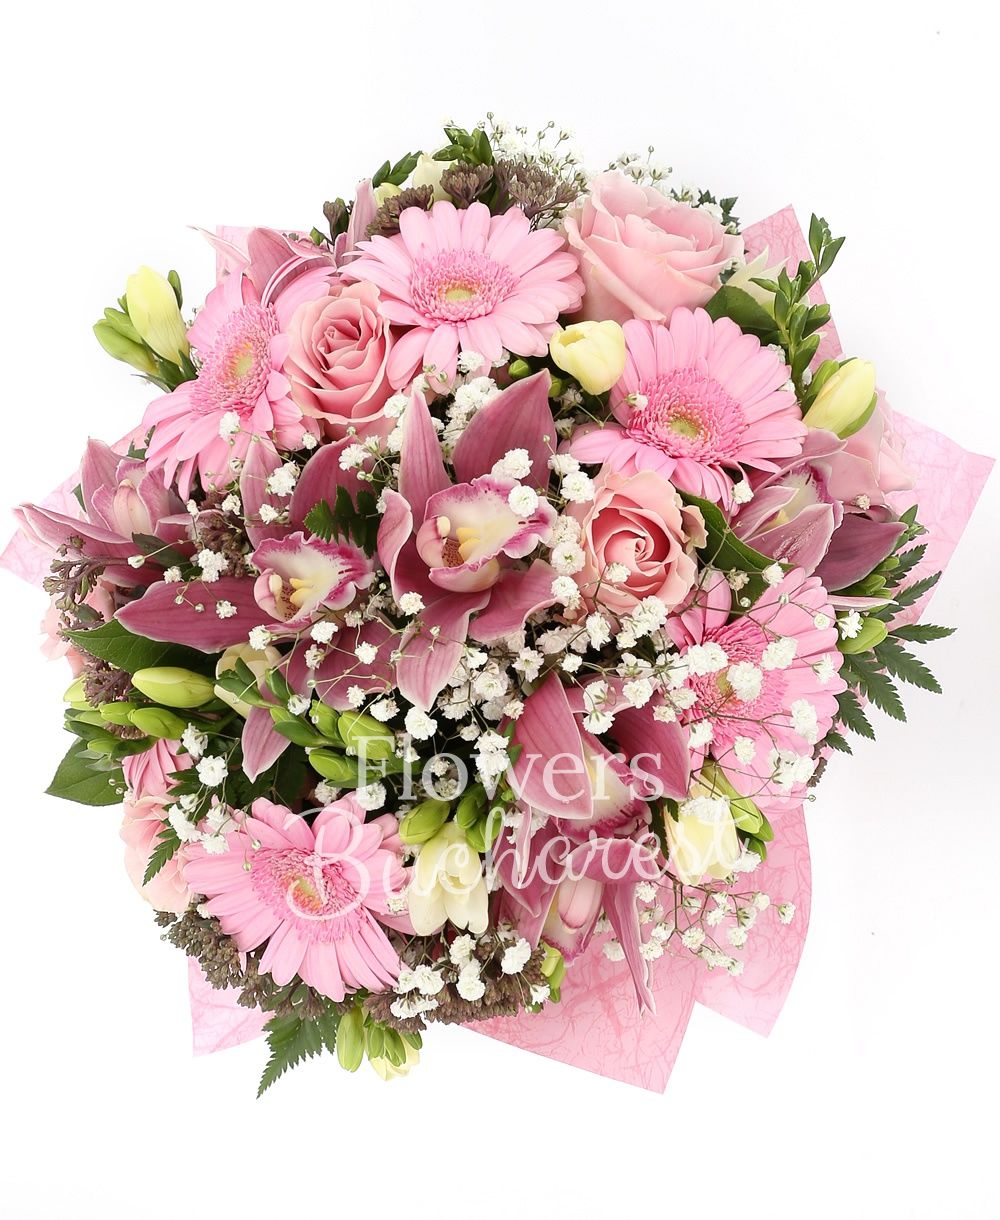 5 pink roses, 15 white freesias, 7 pink gerbera, pink cymbidium, greenery